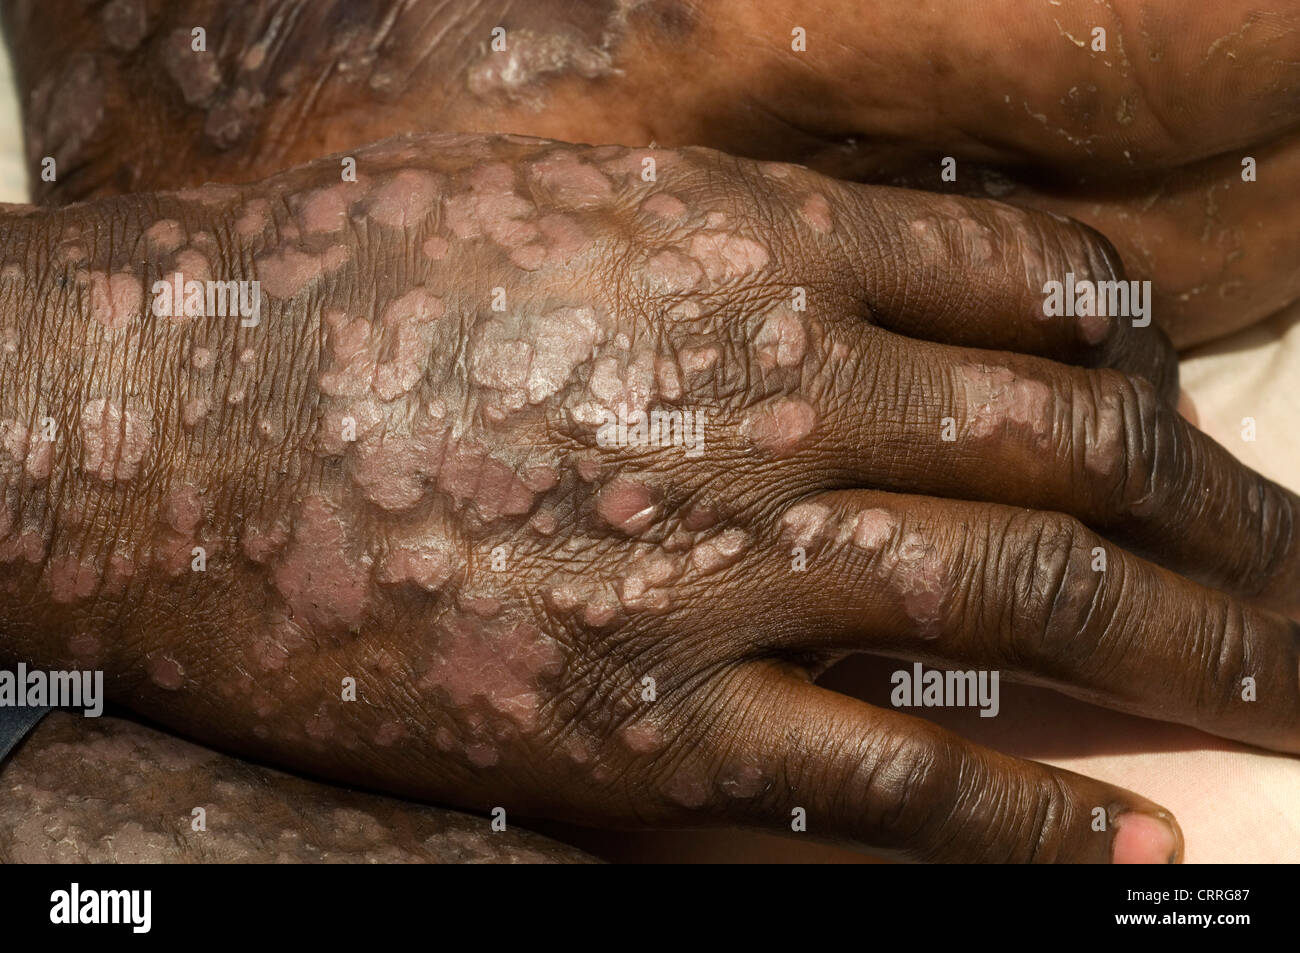 Un paciente con psoriasis severa, extensa a lo largo de todo su cuerpo. Foto de stock